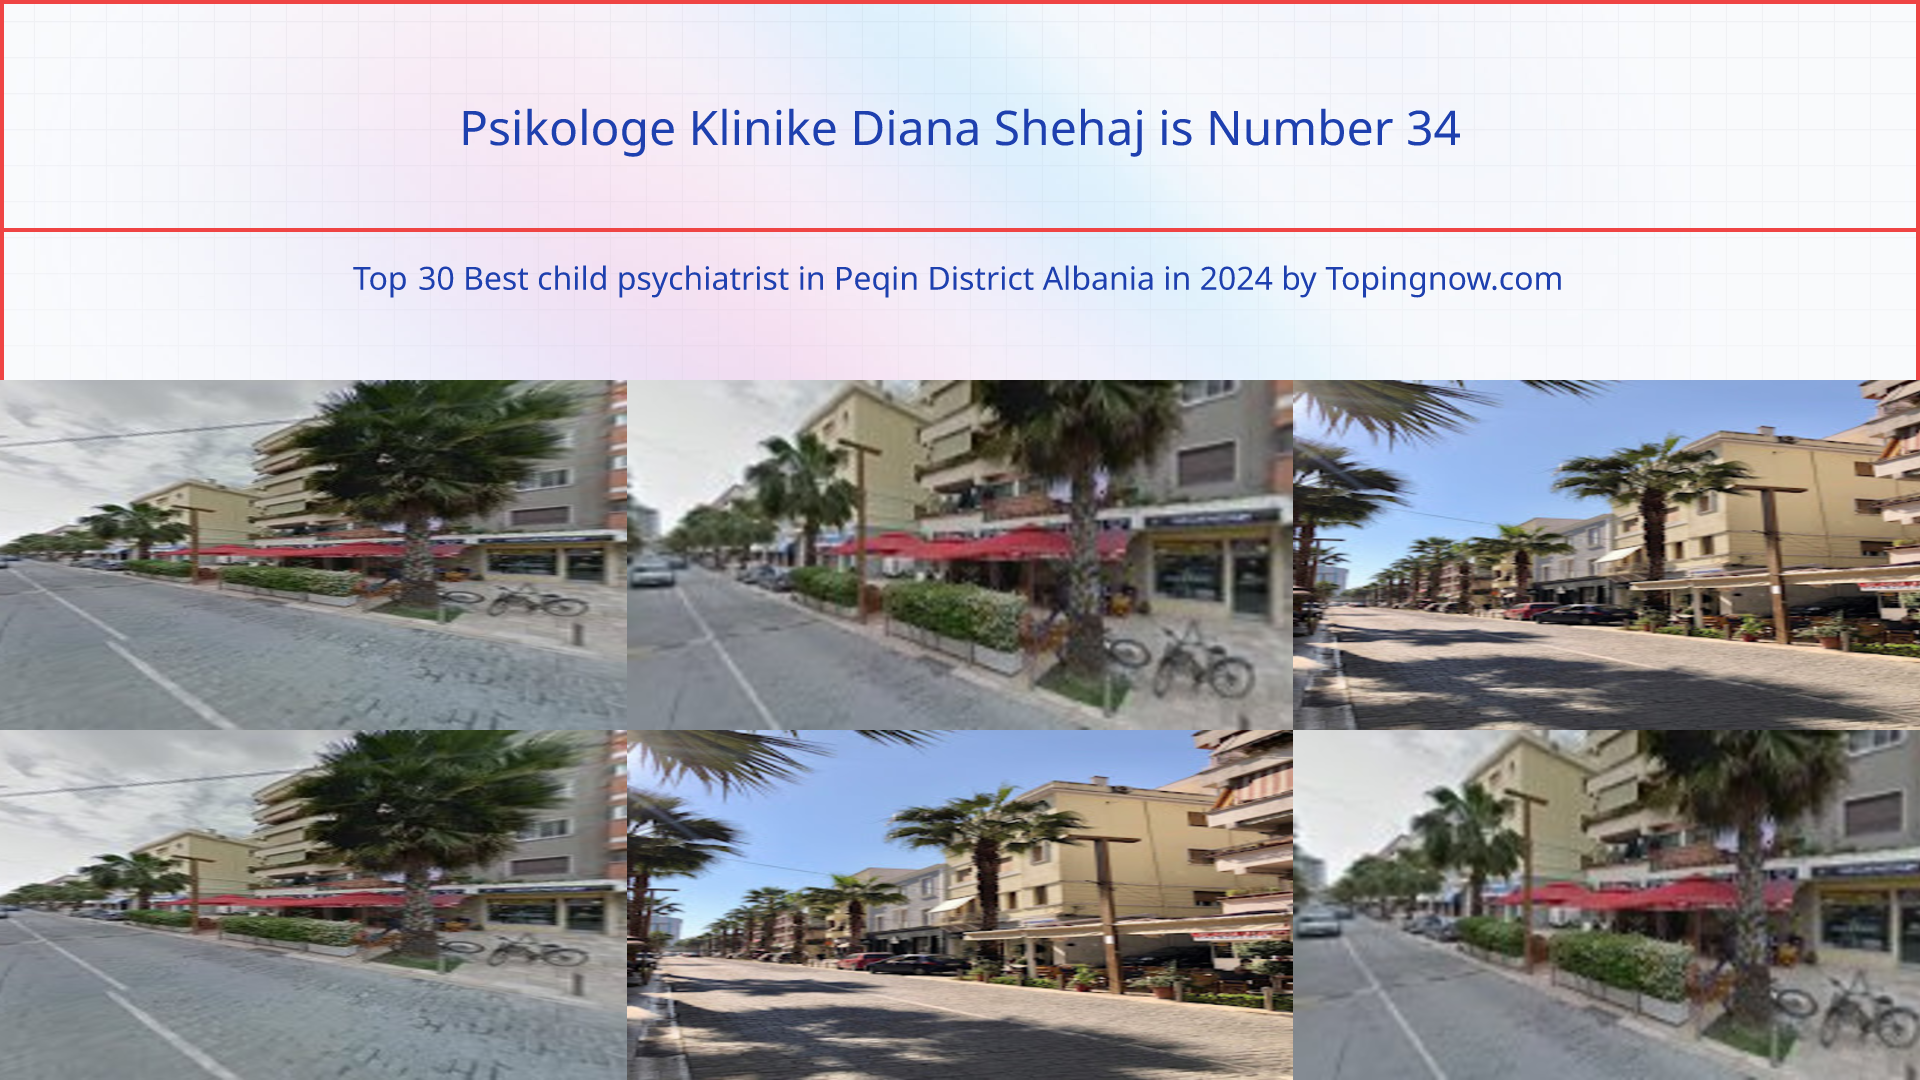 Psikologe Klinike Diana Shehaj: Top 30 Best child psychiatrist in Peqin District Albania in 2024